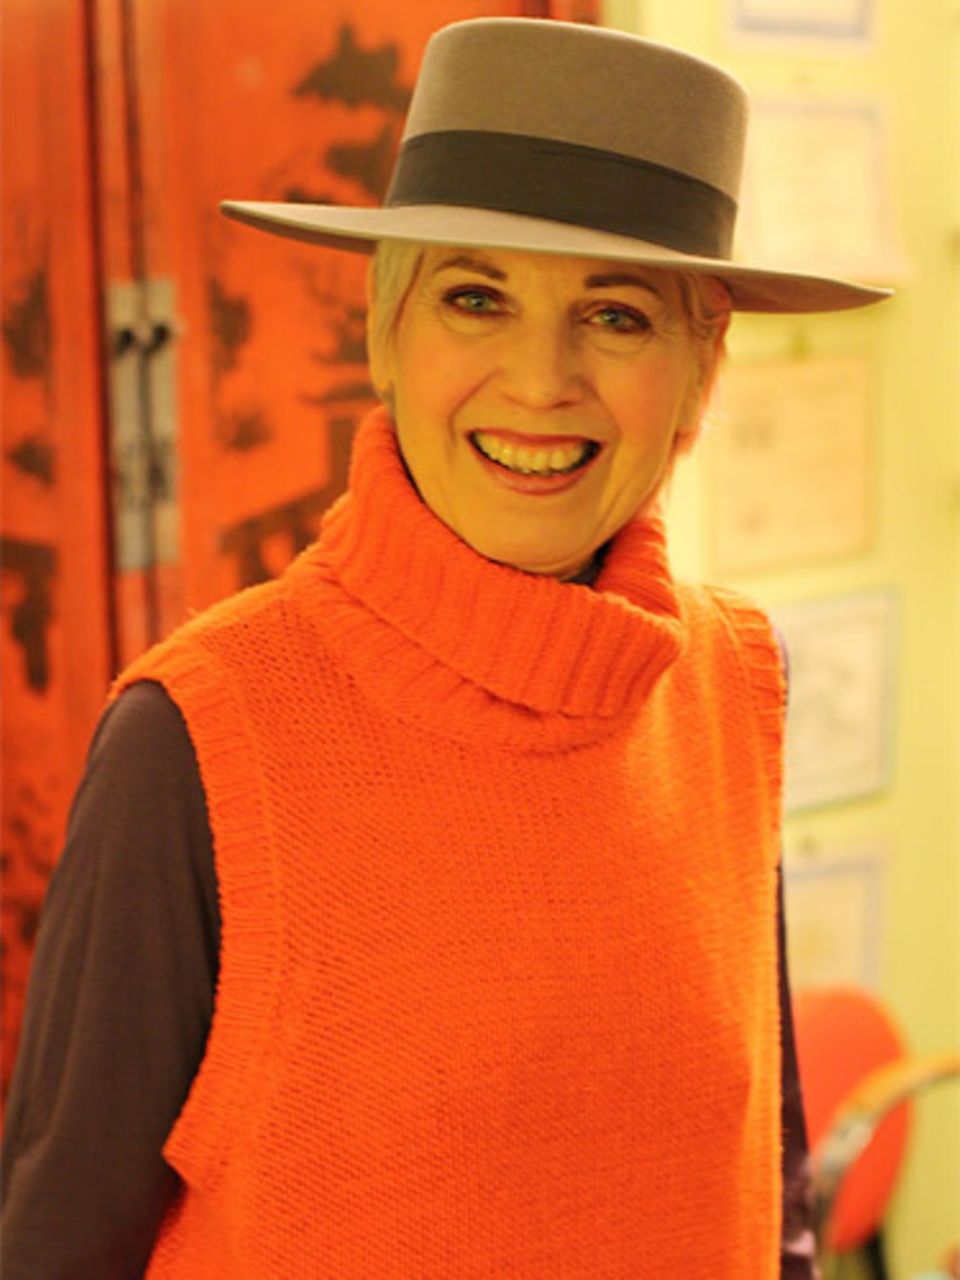 Debra ist Künstlerin und liebt es, mit Farben und Materialien zu spielen. Was sie auch tut, sie tut es mit Stil - ins Kino gehen zum Beispiel. Für diesen Anlass greift sie zum Hut und einem orangefarbenem Pullunder.